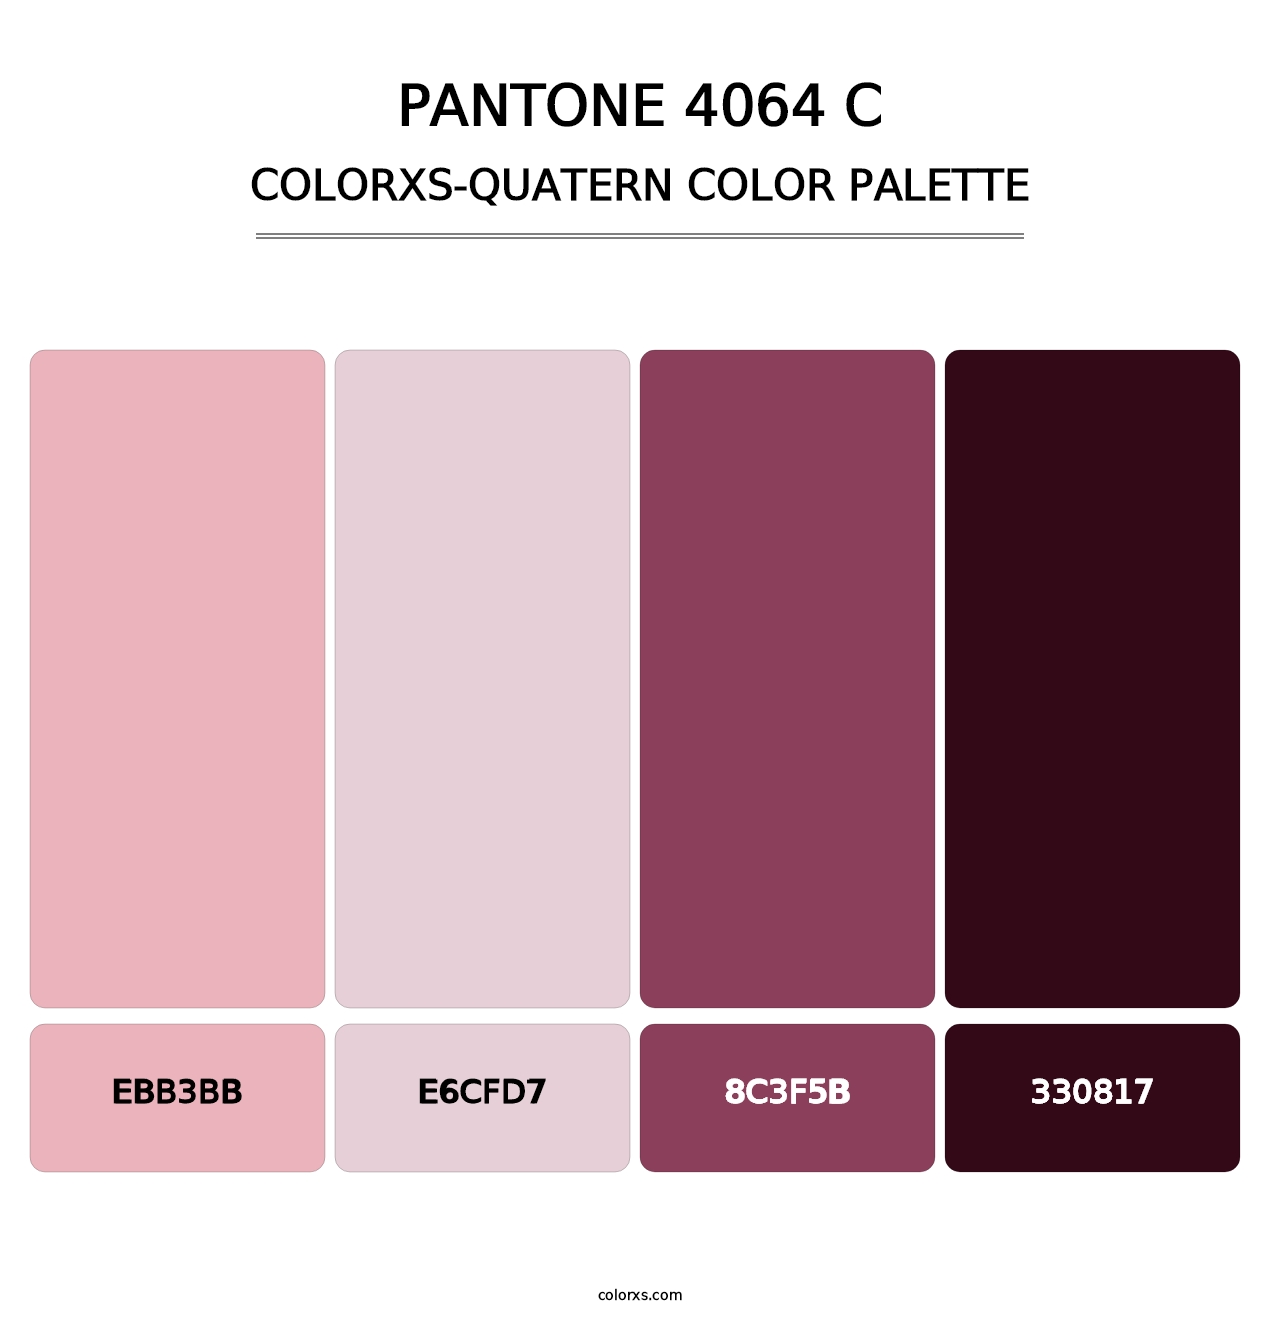 PANTONE 4064 C - Colorxs Quatern Palette